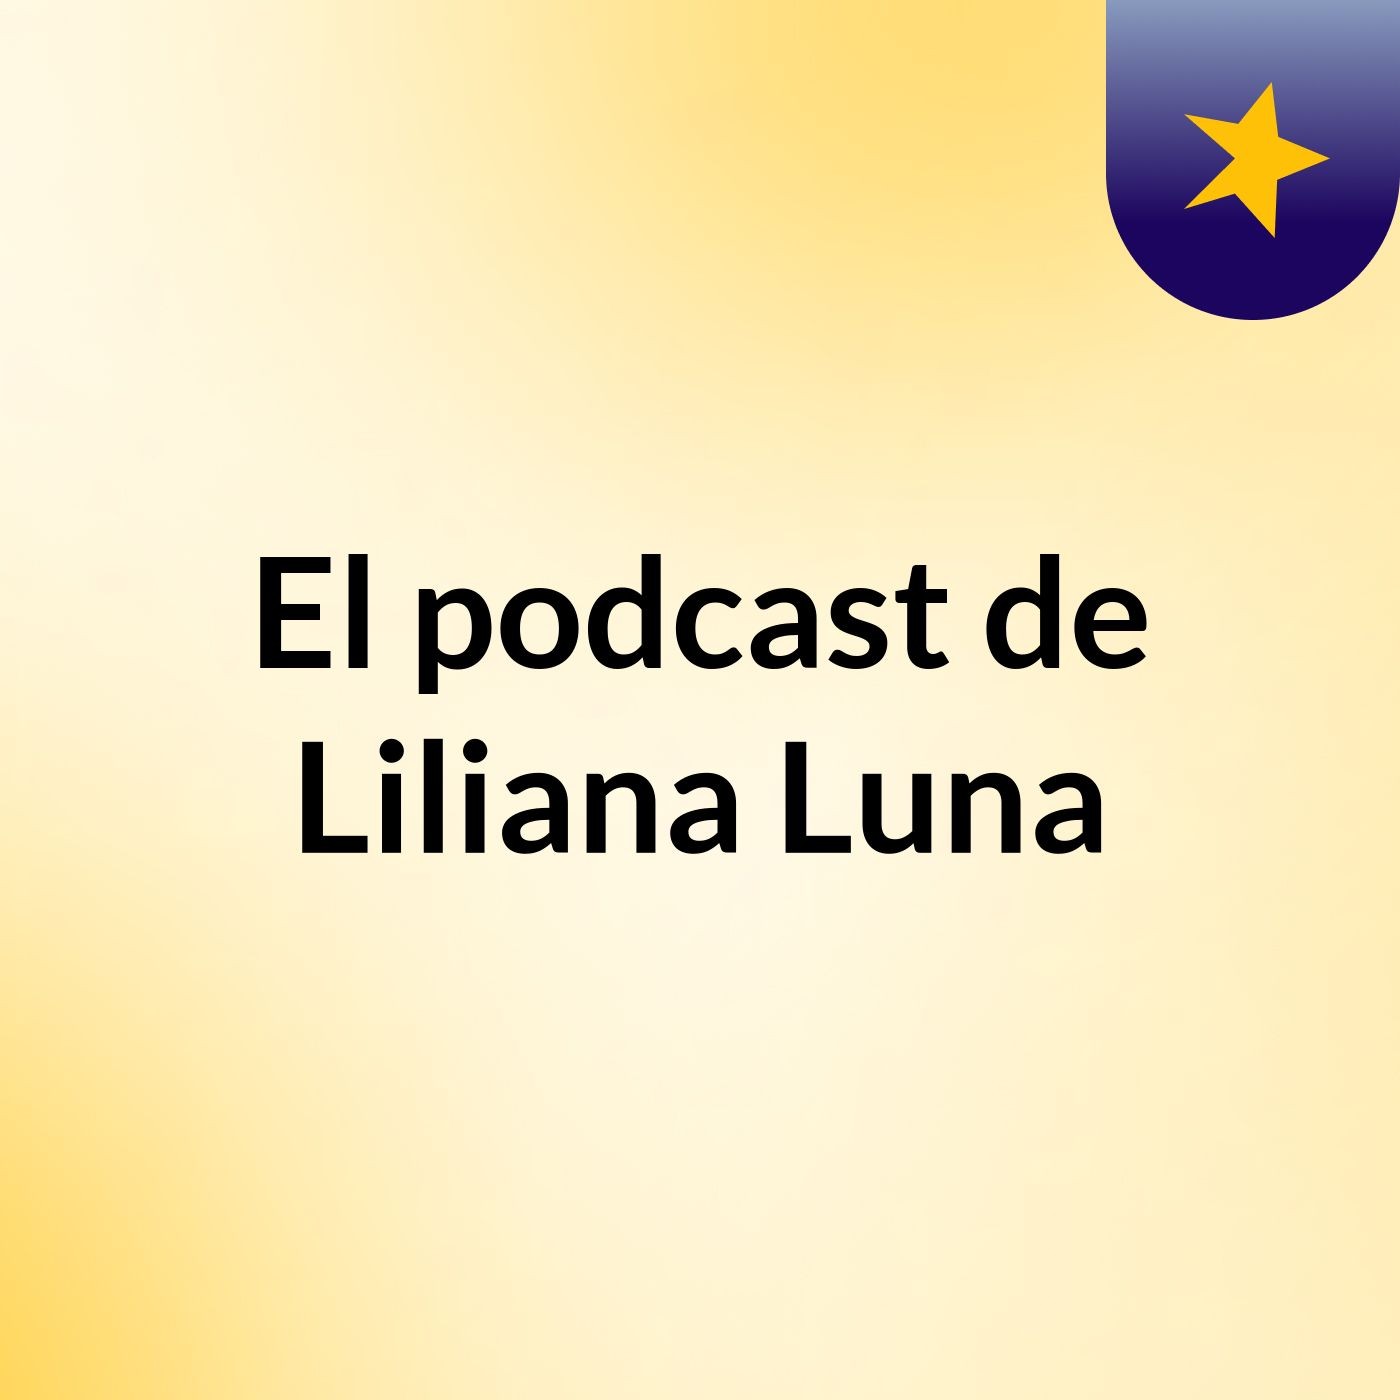 El podcast de Liliana Luna